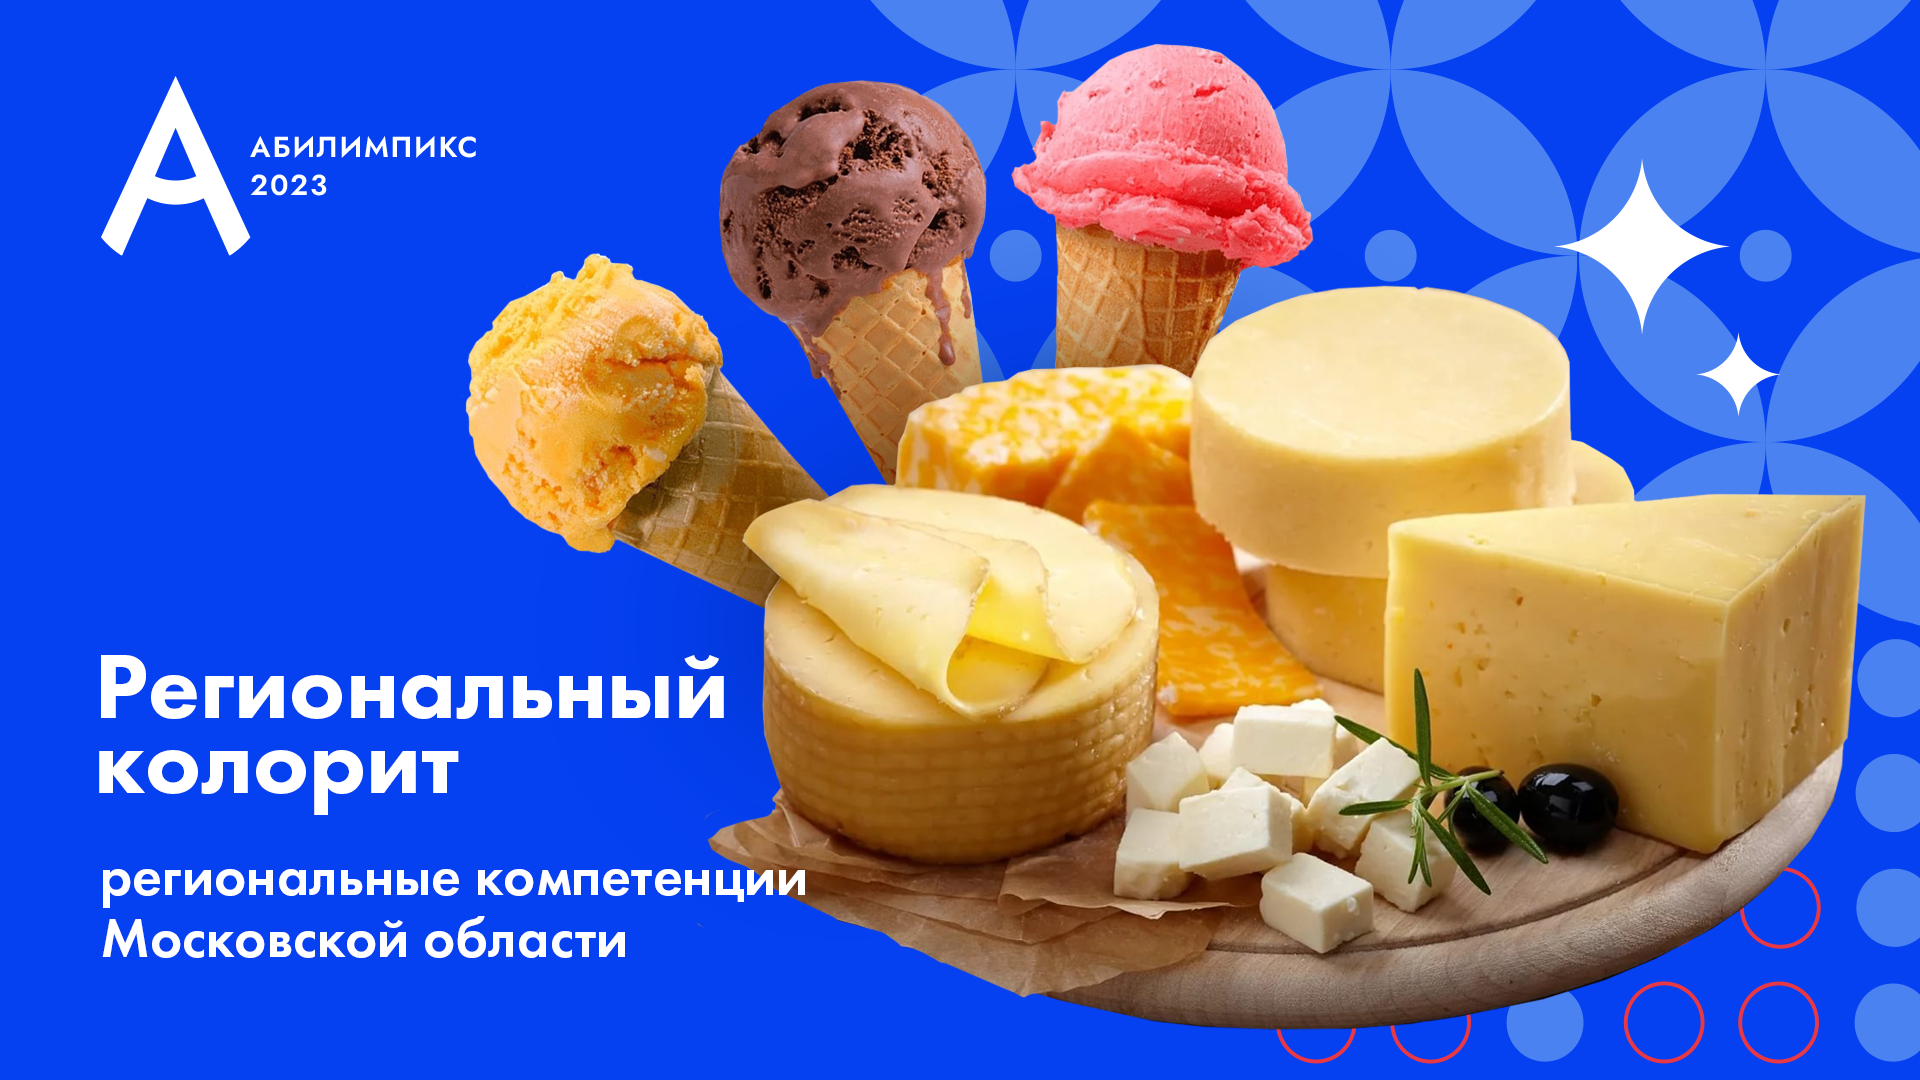 <p>«Сыроварение» и «Изготовление мороженого» - региональные компетенции Московской области</p>